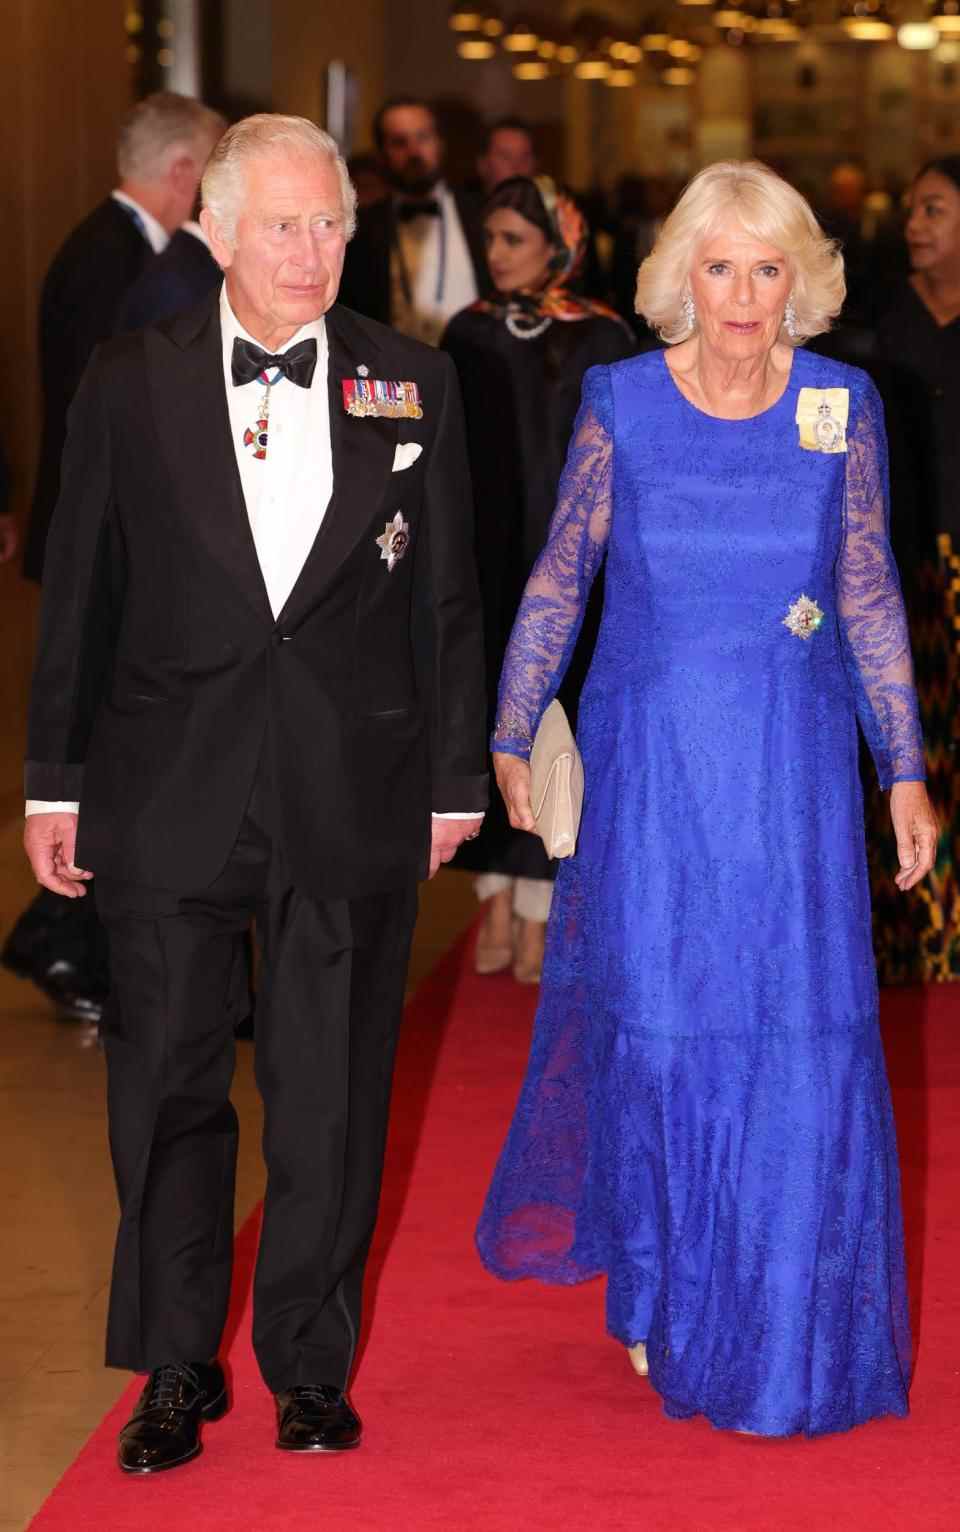 Le prince Charles et Camilla, duchesse de Cornouailles arrivent au dîner de l'hôtel Marriott - Chris Jackson/Getty Images